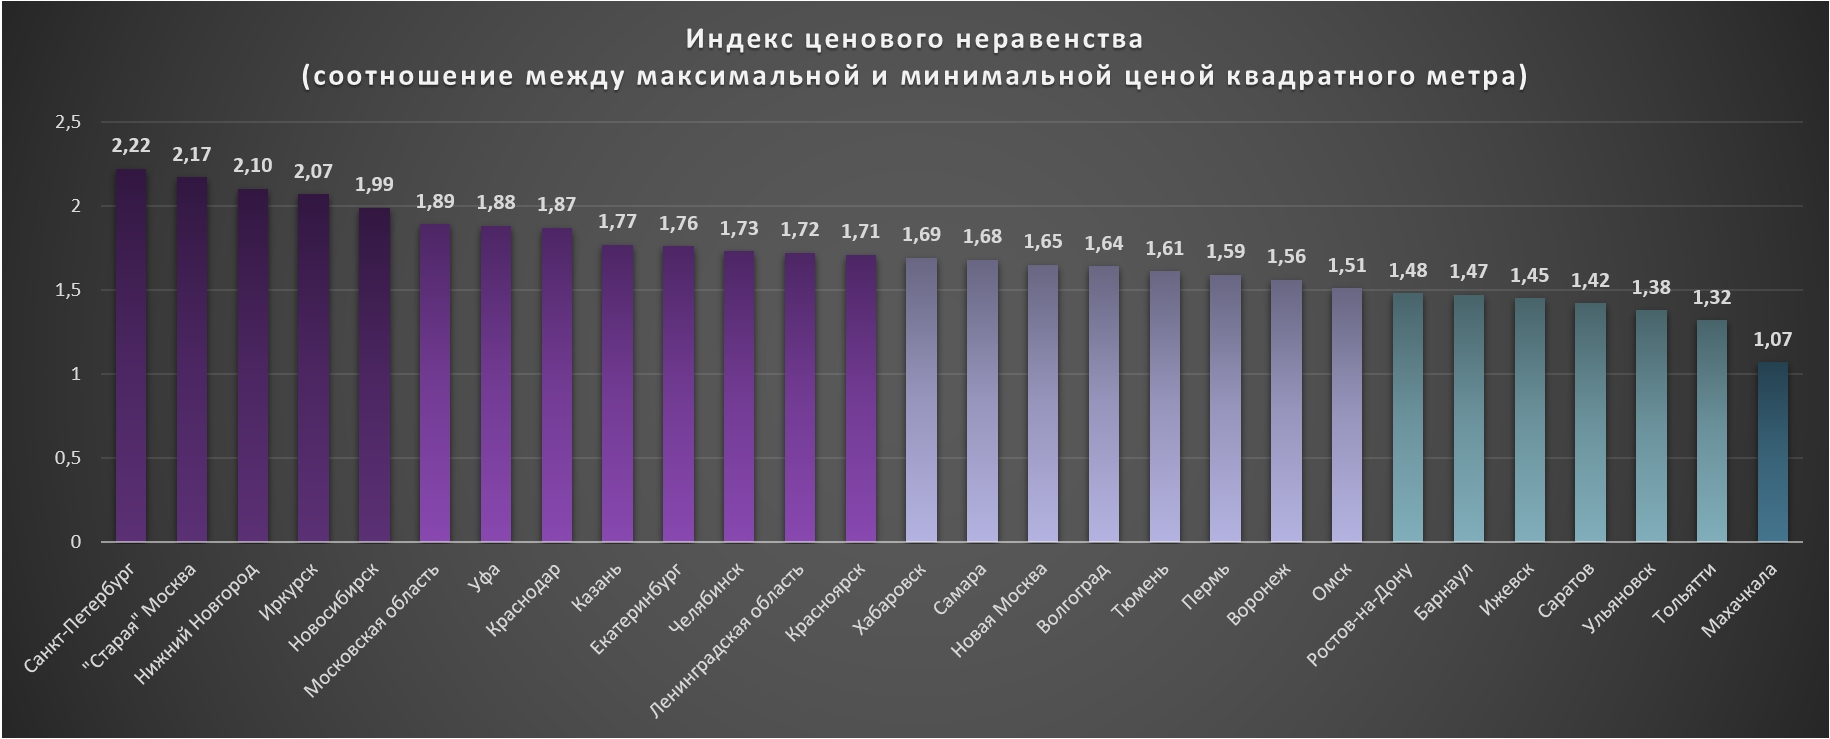 На петербургском рынке наблюдается самый высокий уровень неравенства в масштабах страны